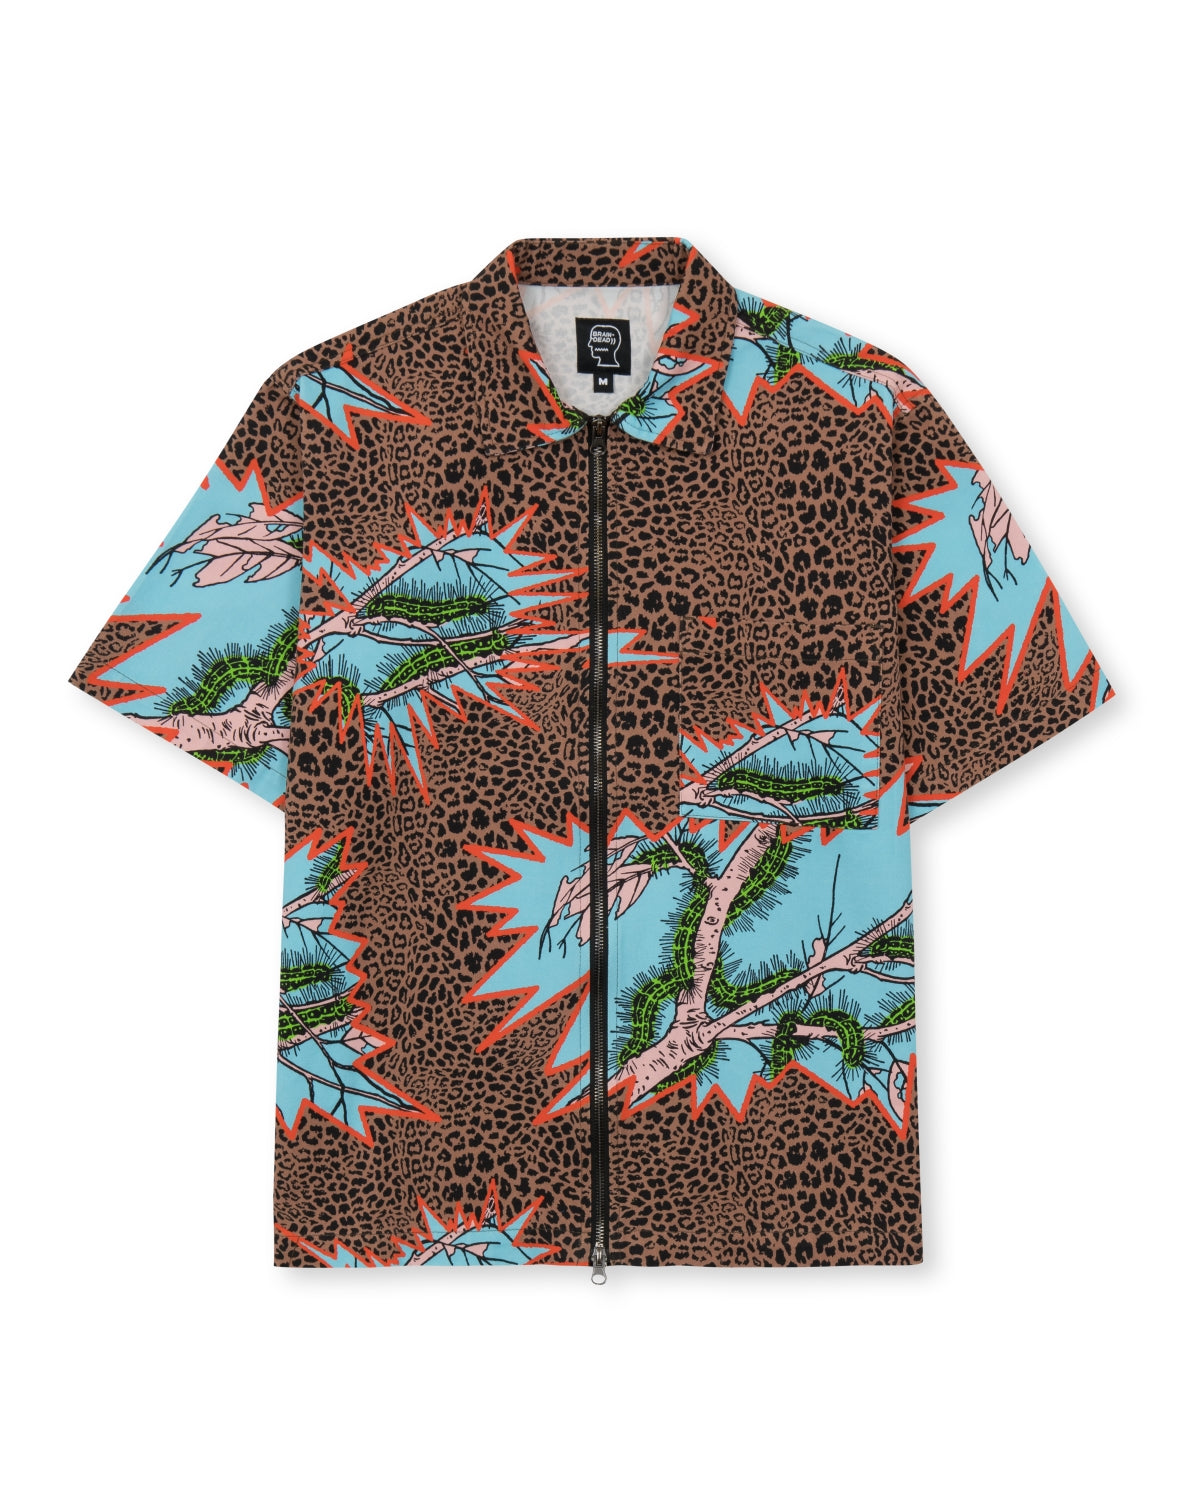 Mutated Cheetah Full Zip Short Sleeve Shirt - Brown 1